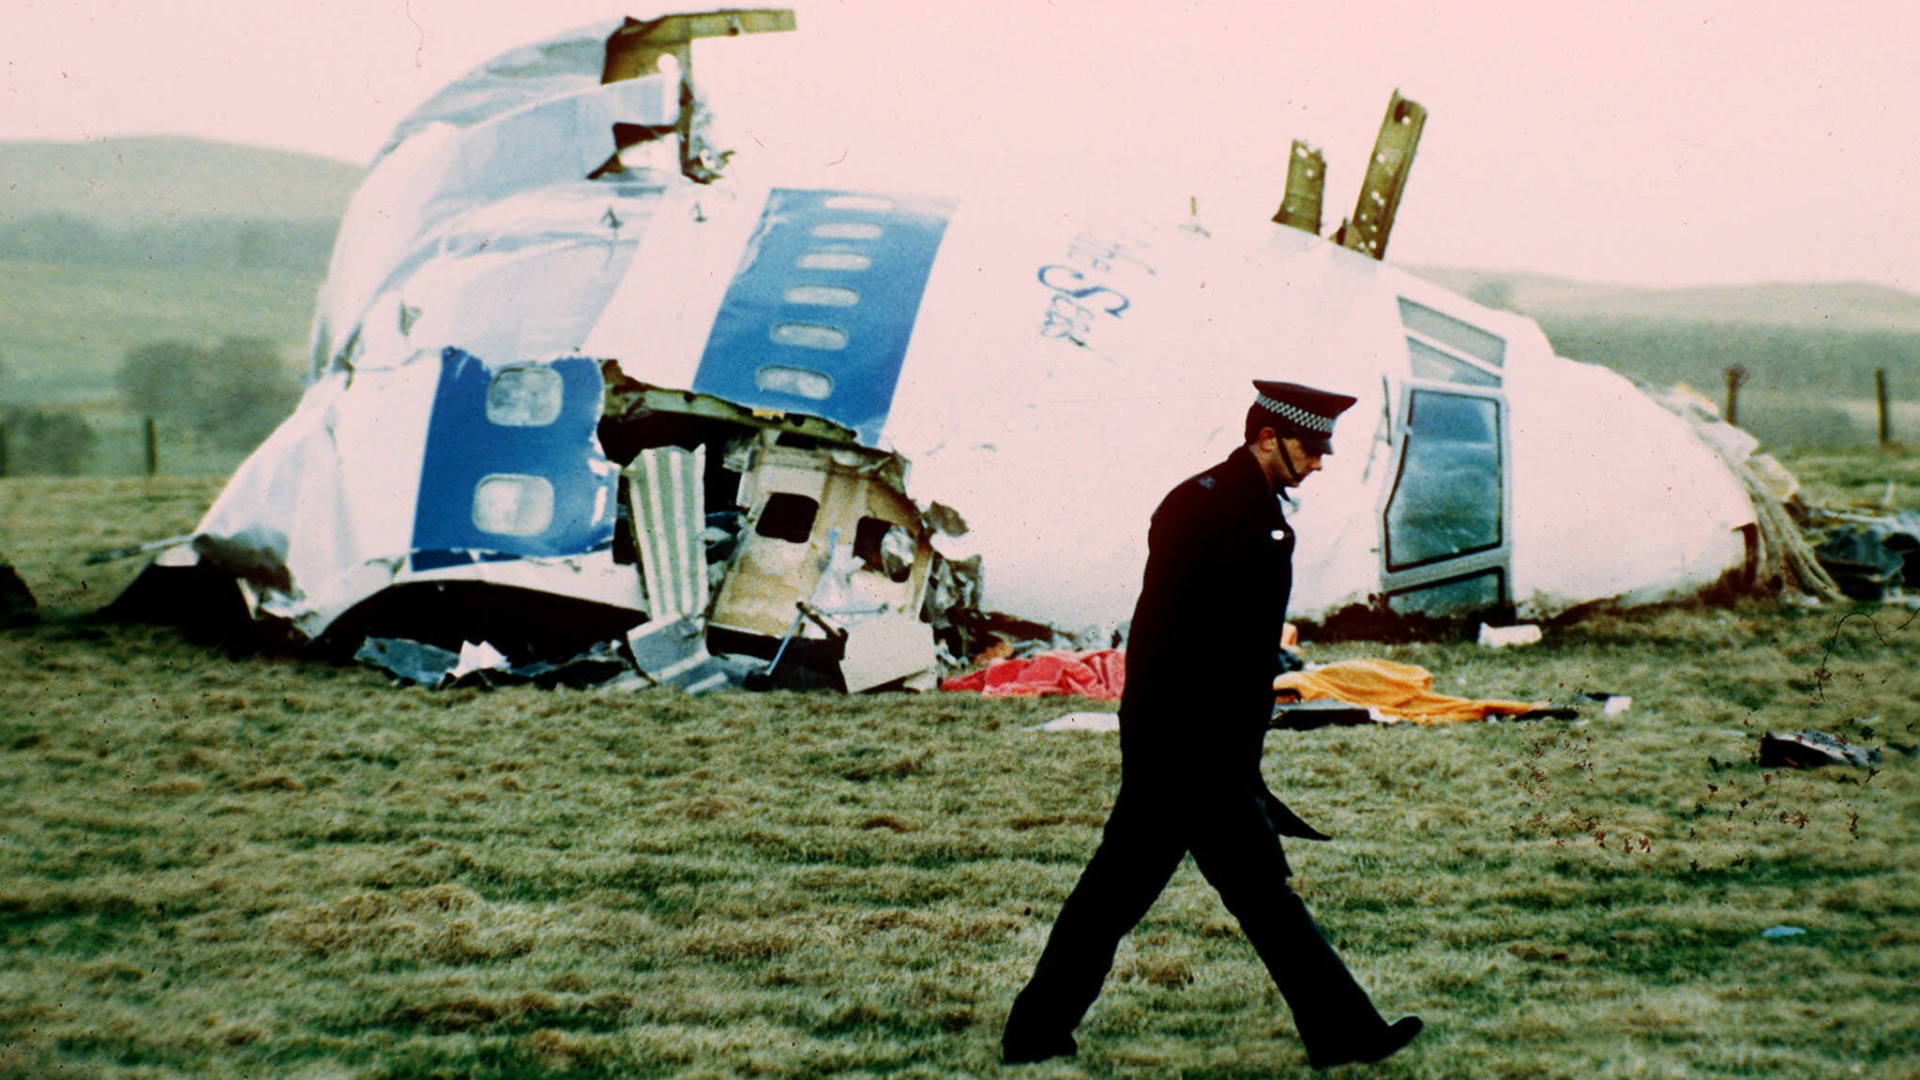 Trümmer der abgestürzten Boeing 747 im Jahr 1988 in Lockerbie, Schottland  | dpa